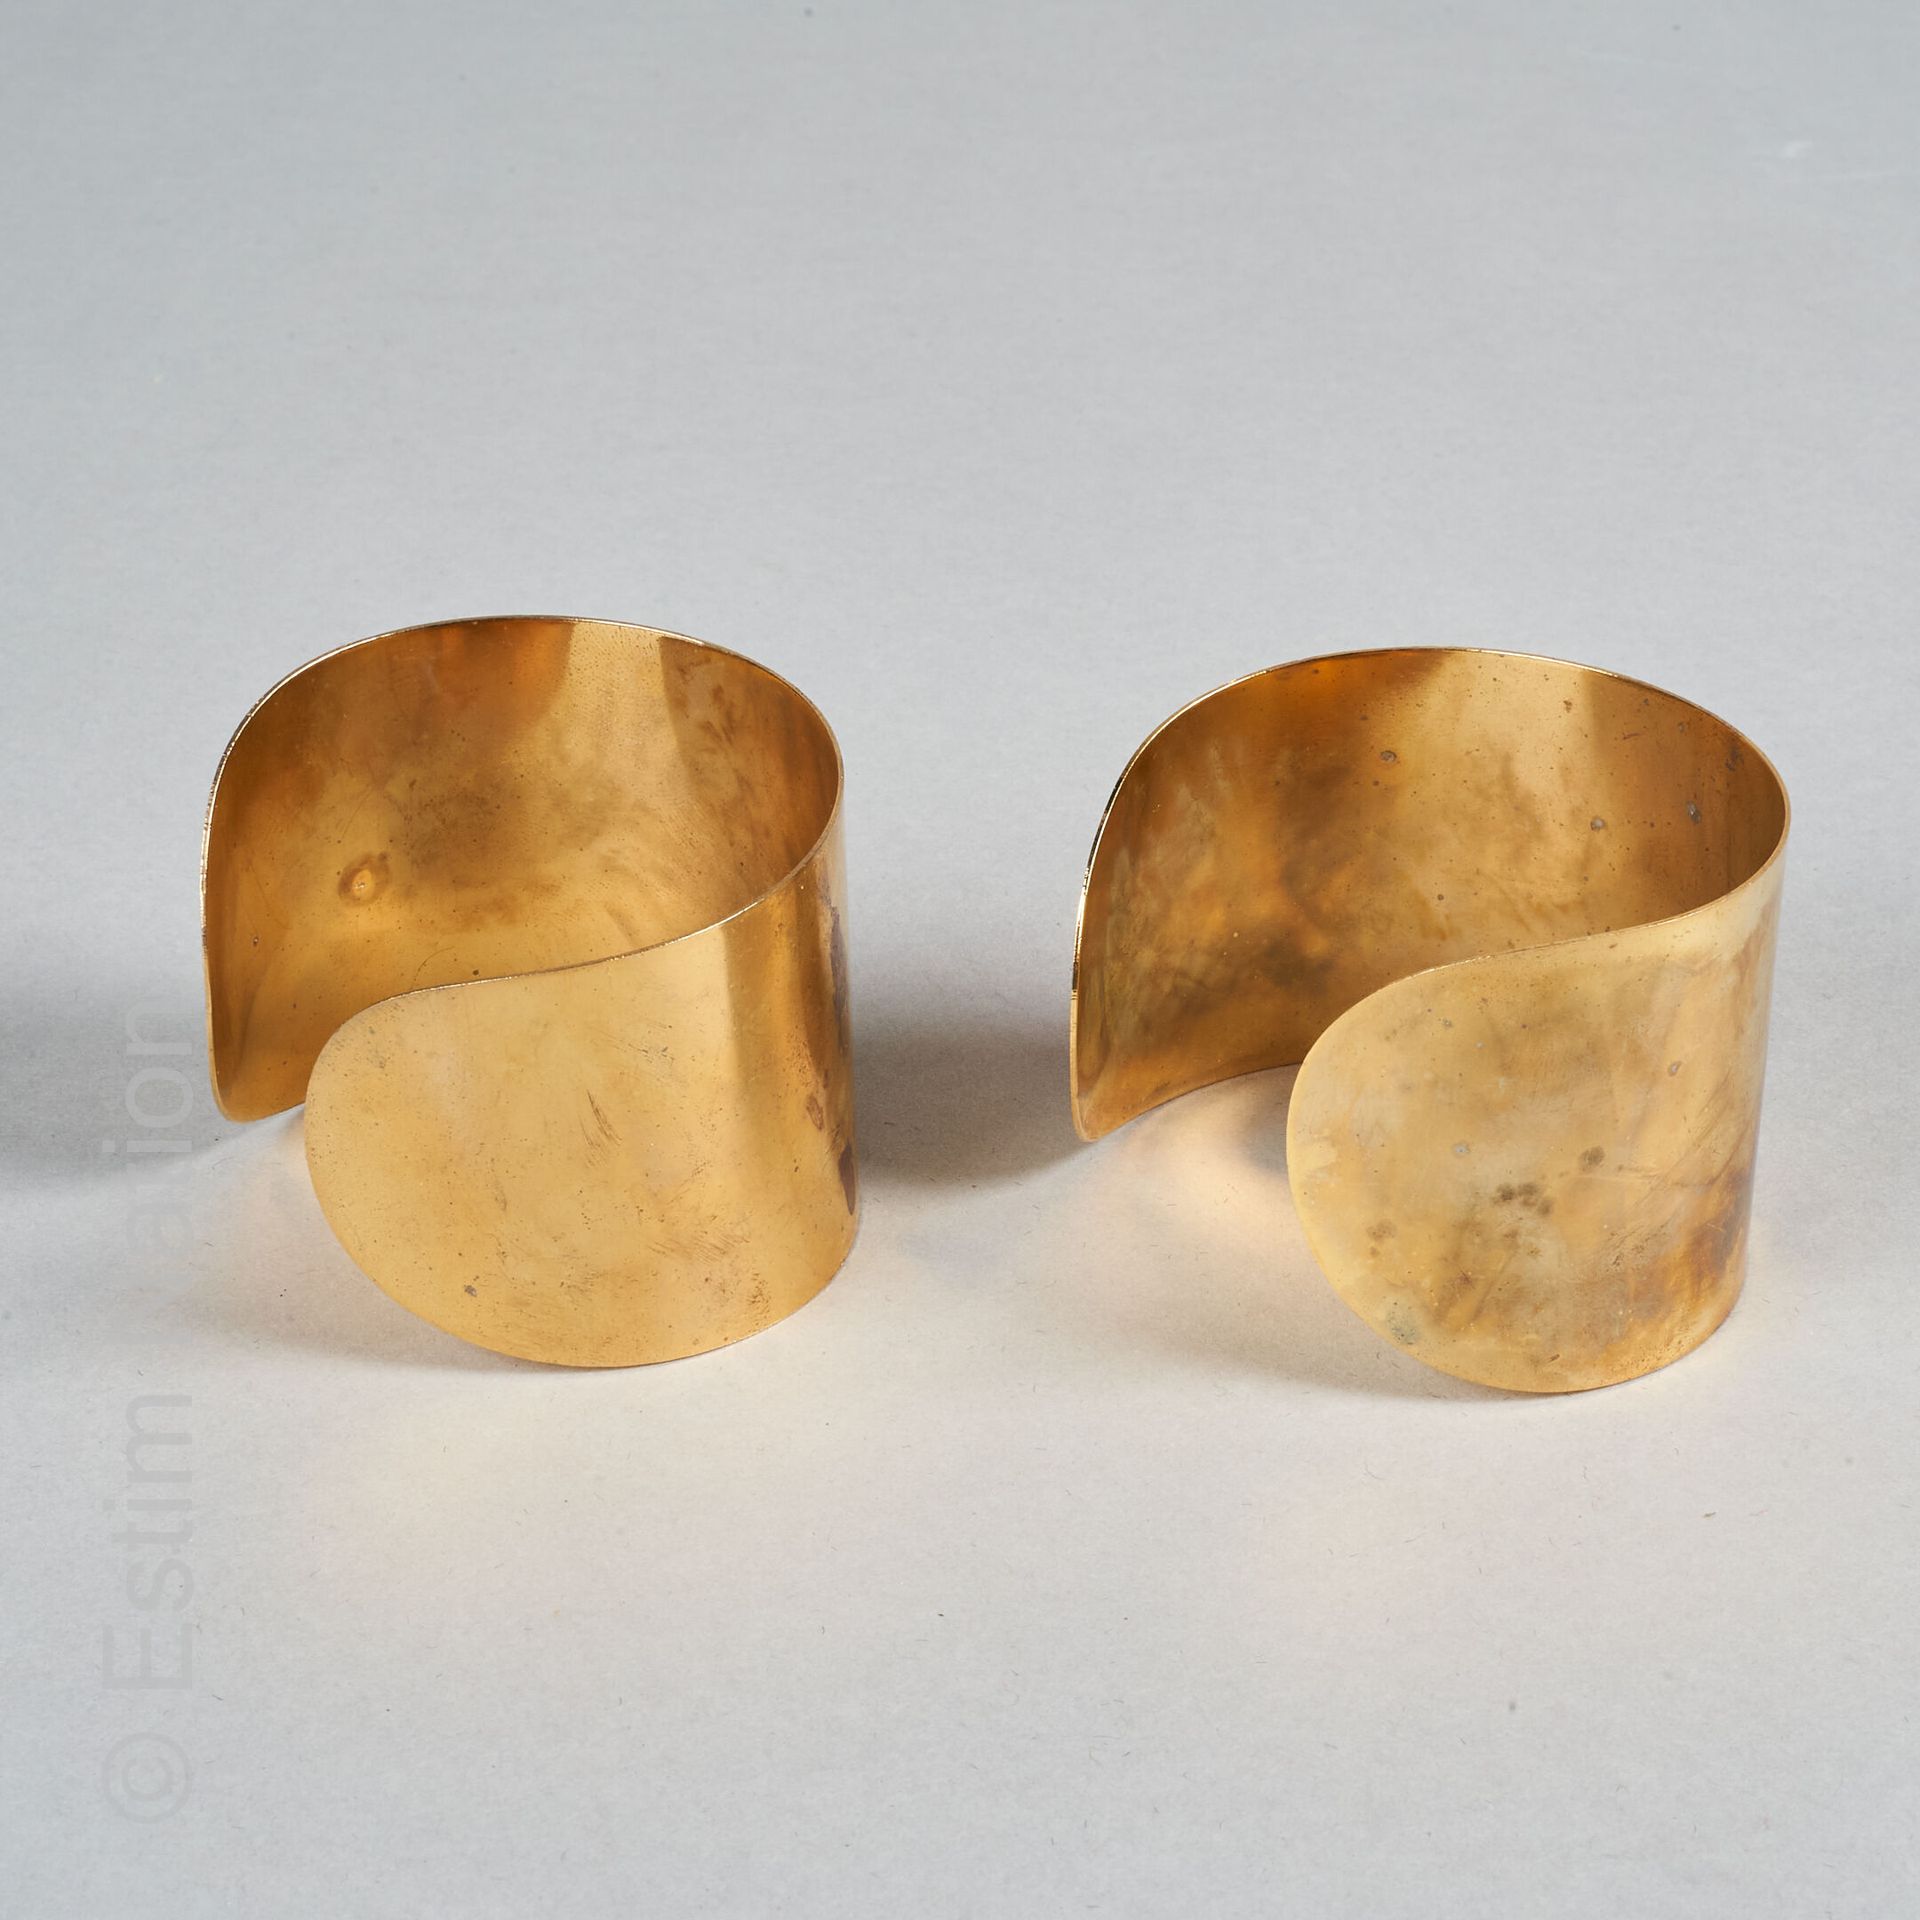 MANCHETTES CUIVRE Ein Paar Manschettenarmbänder aus Kupfer. 

Breite: 4,5 cm 

(&hellip;